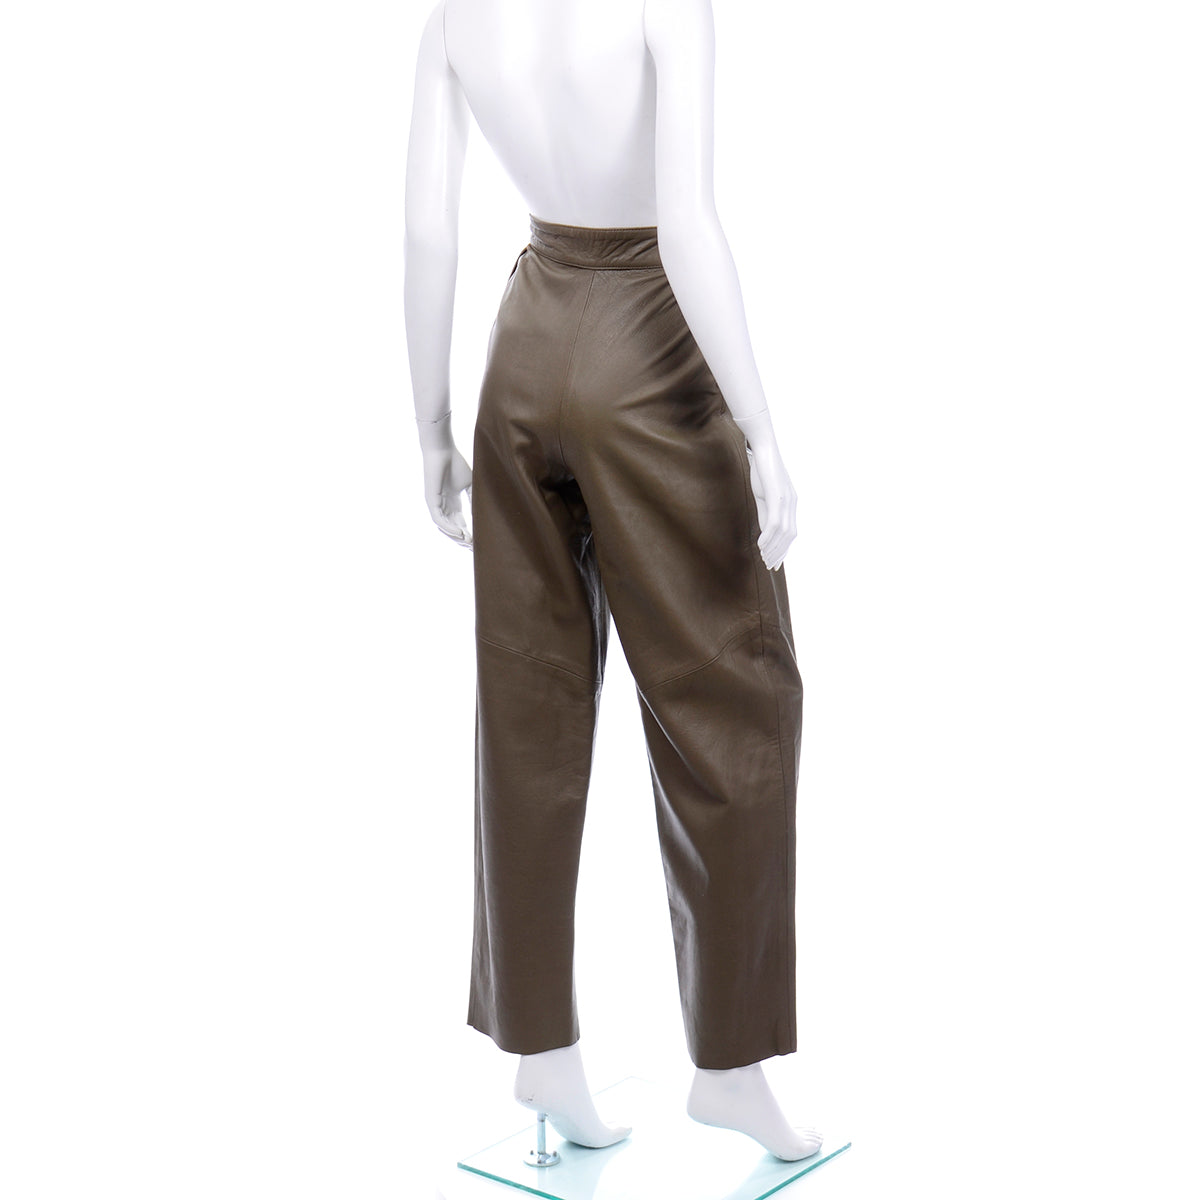 1980s Olive Green Leather Vintage Pants Size 6 – Modig